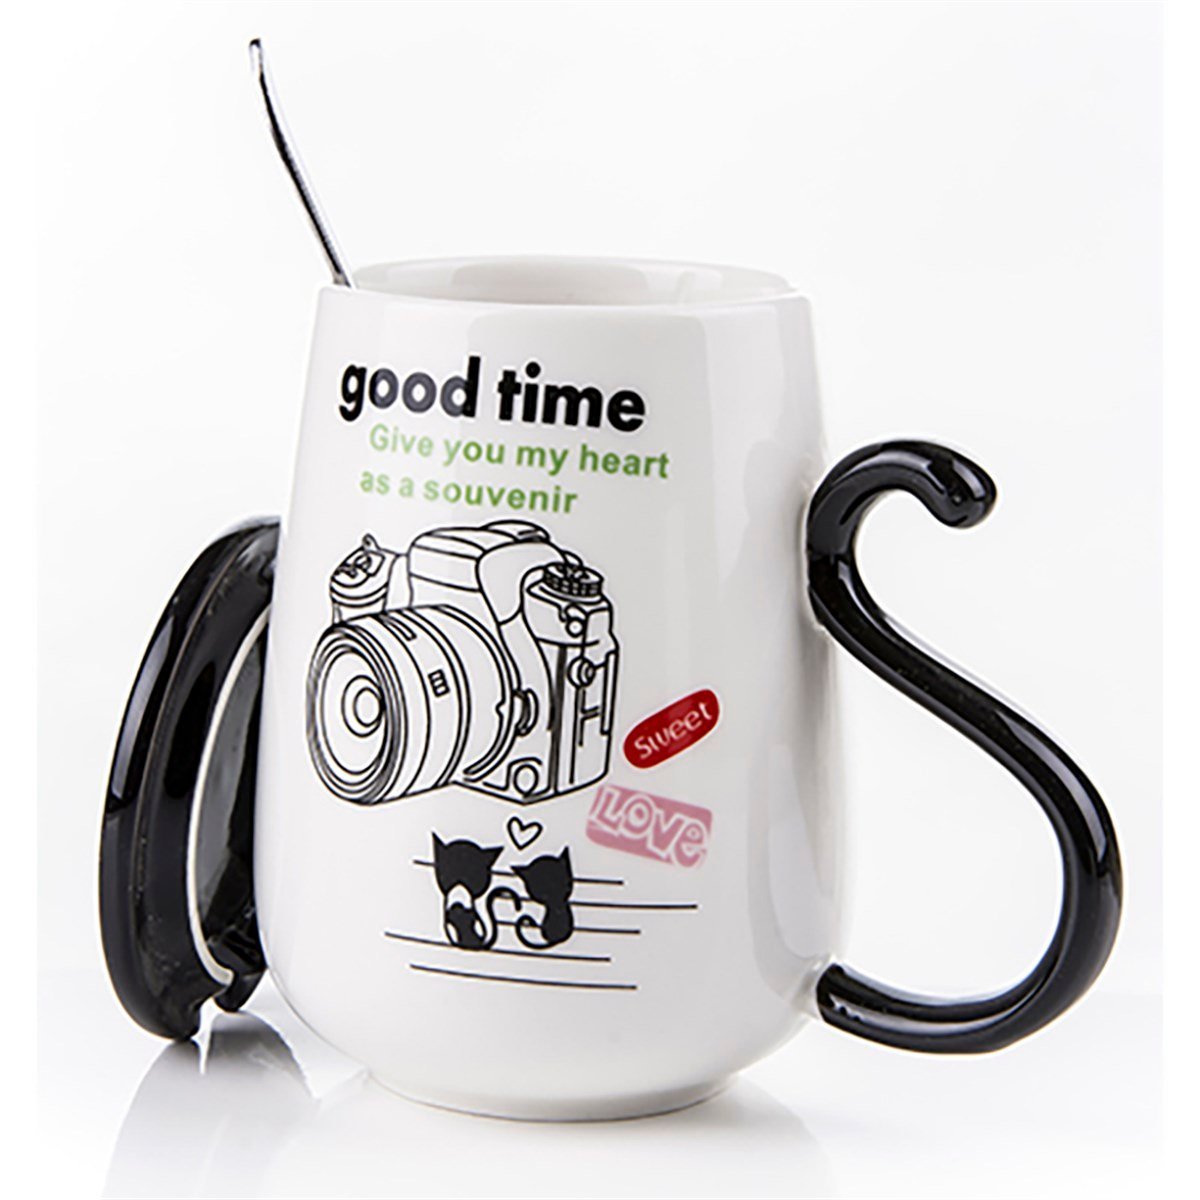 Fotoğraf Makinası Temalı Kapaklı ve Kaşıklı Kupa Bardak | Gifthome